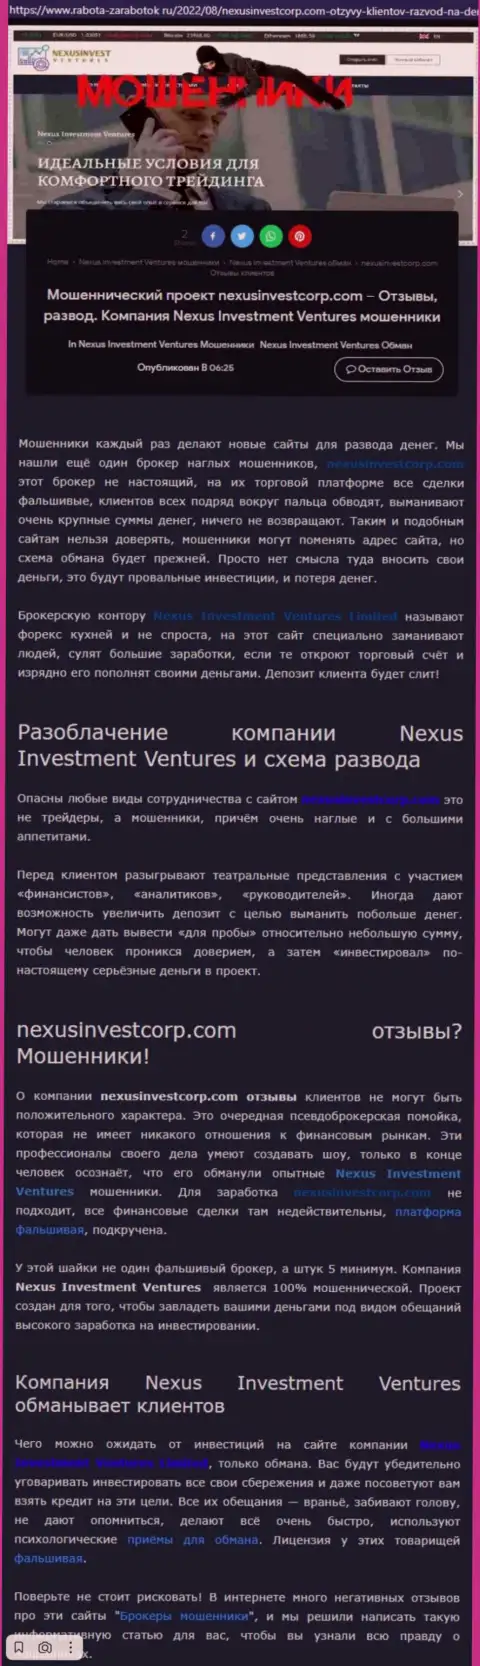 Если не хотите оказаться еще одной жертвой Nexus Investment Ventures, бегите от них подальше (обзор)